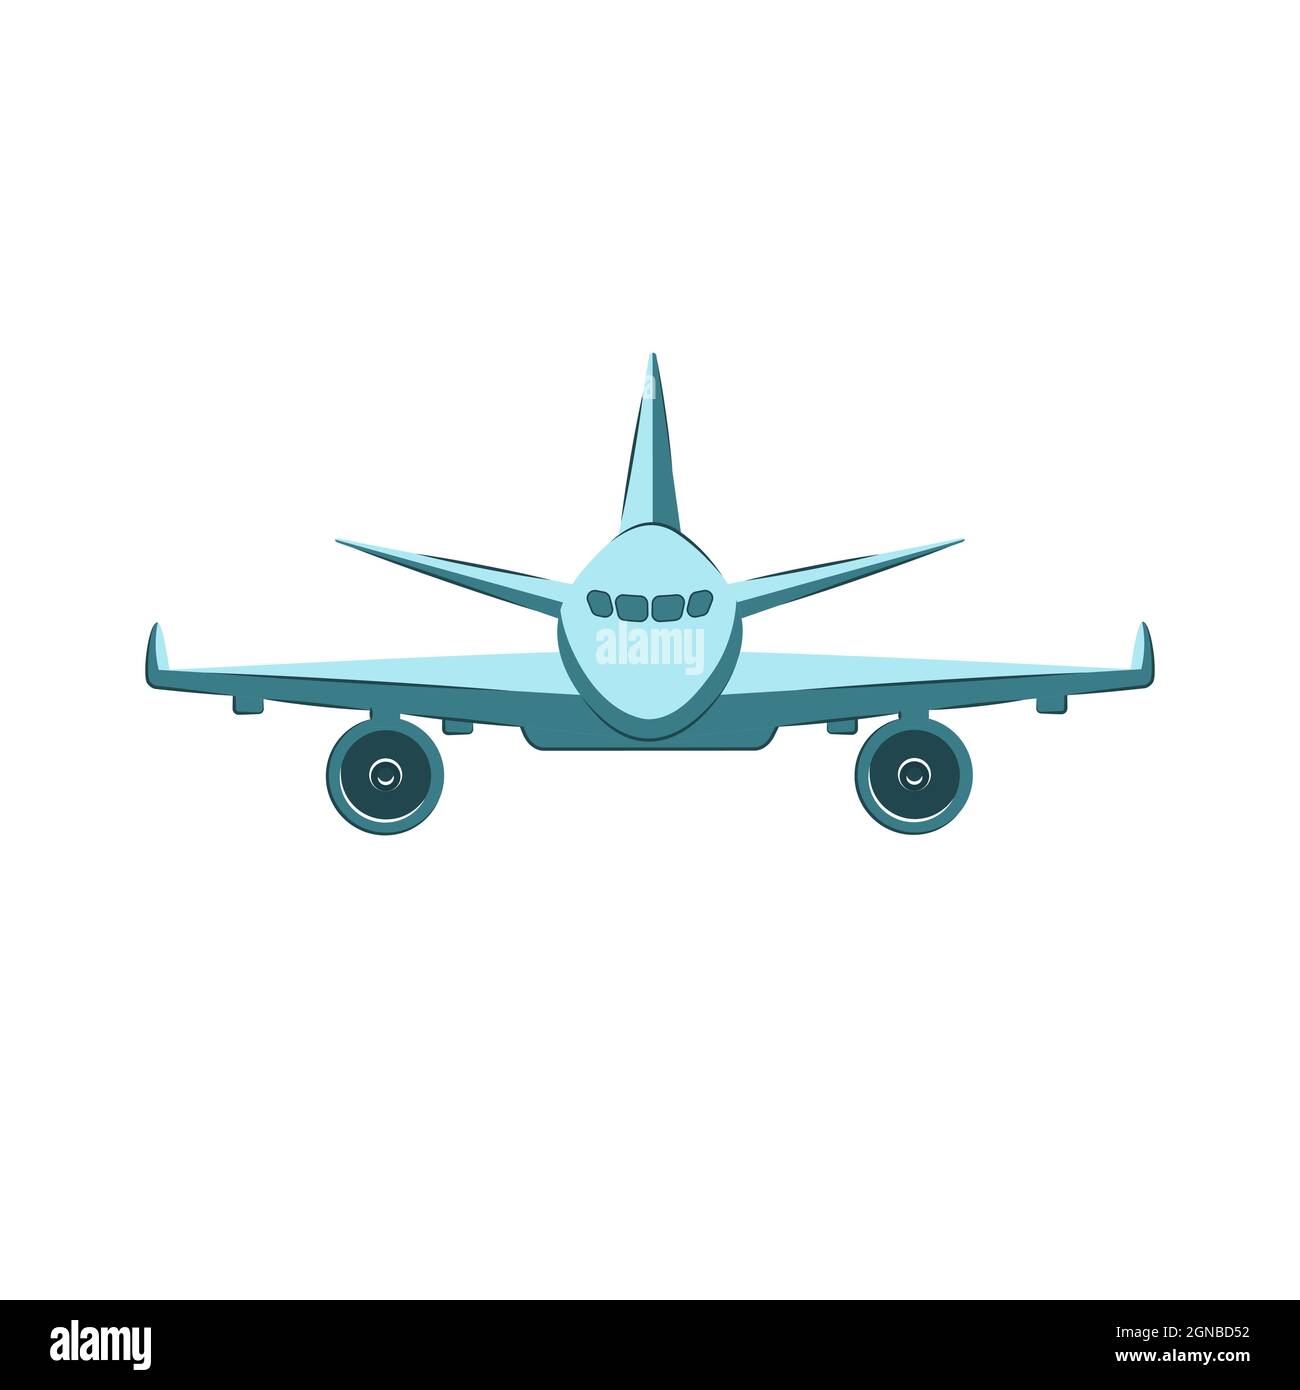 Flugzeug Vorderansicht Vektor flache Abbildung. Fliegendes Boeing-Flugzeug isoliert auf weißem Hintergrund. Stock Vektor